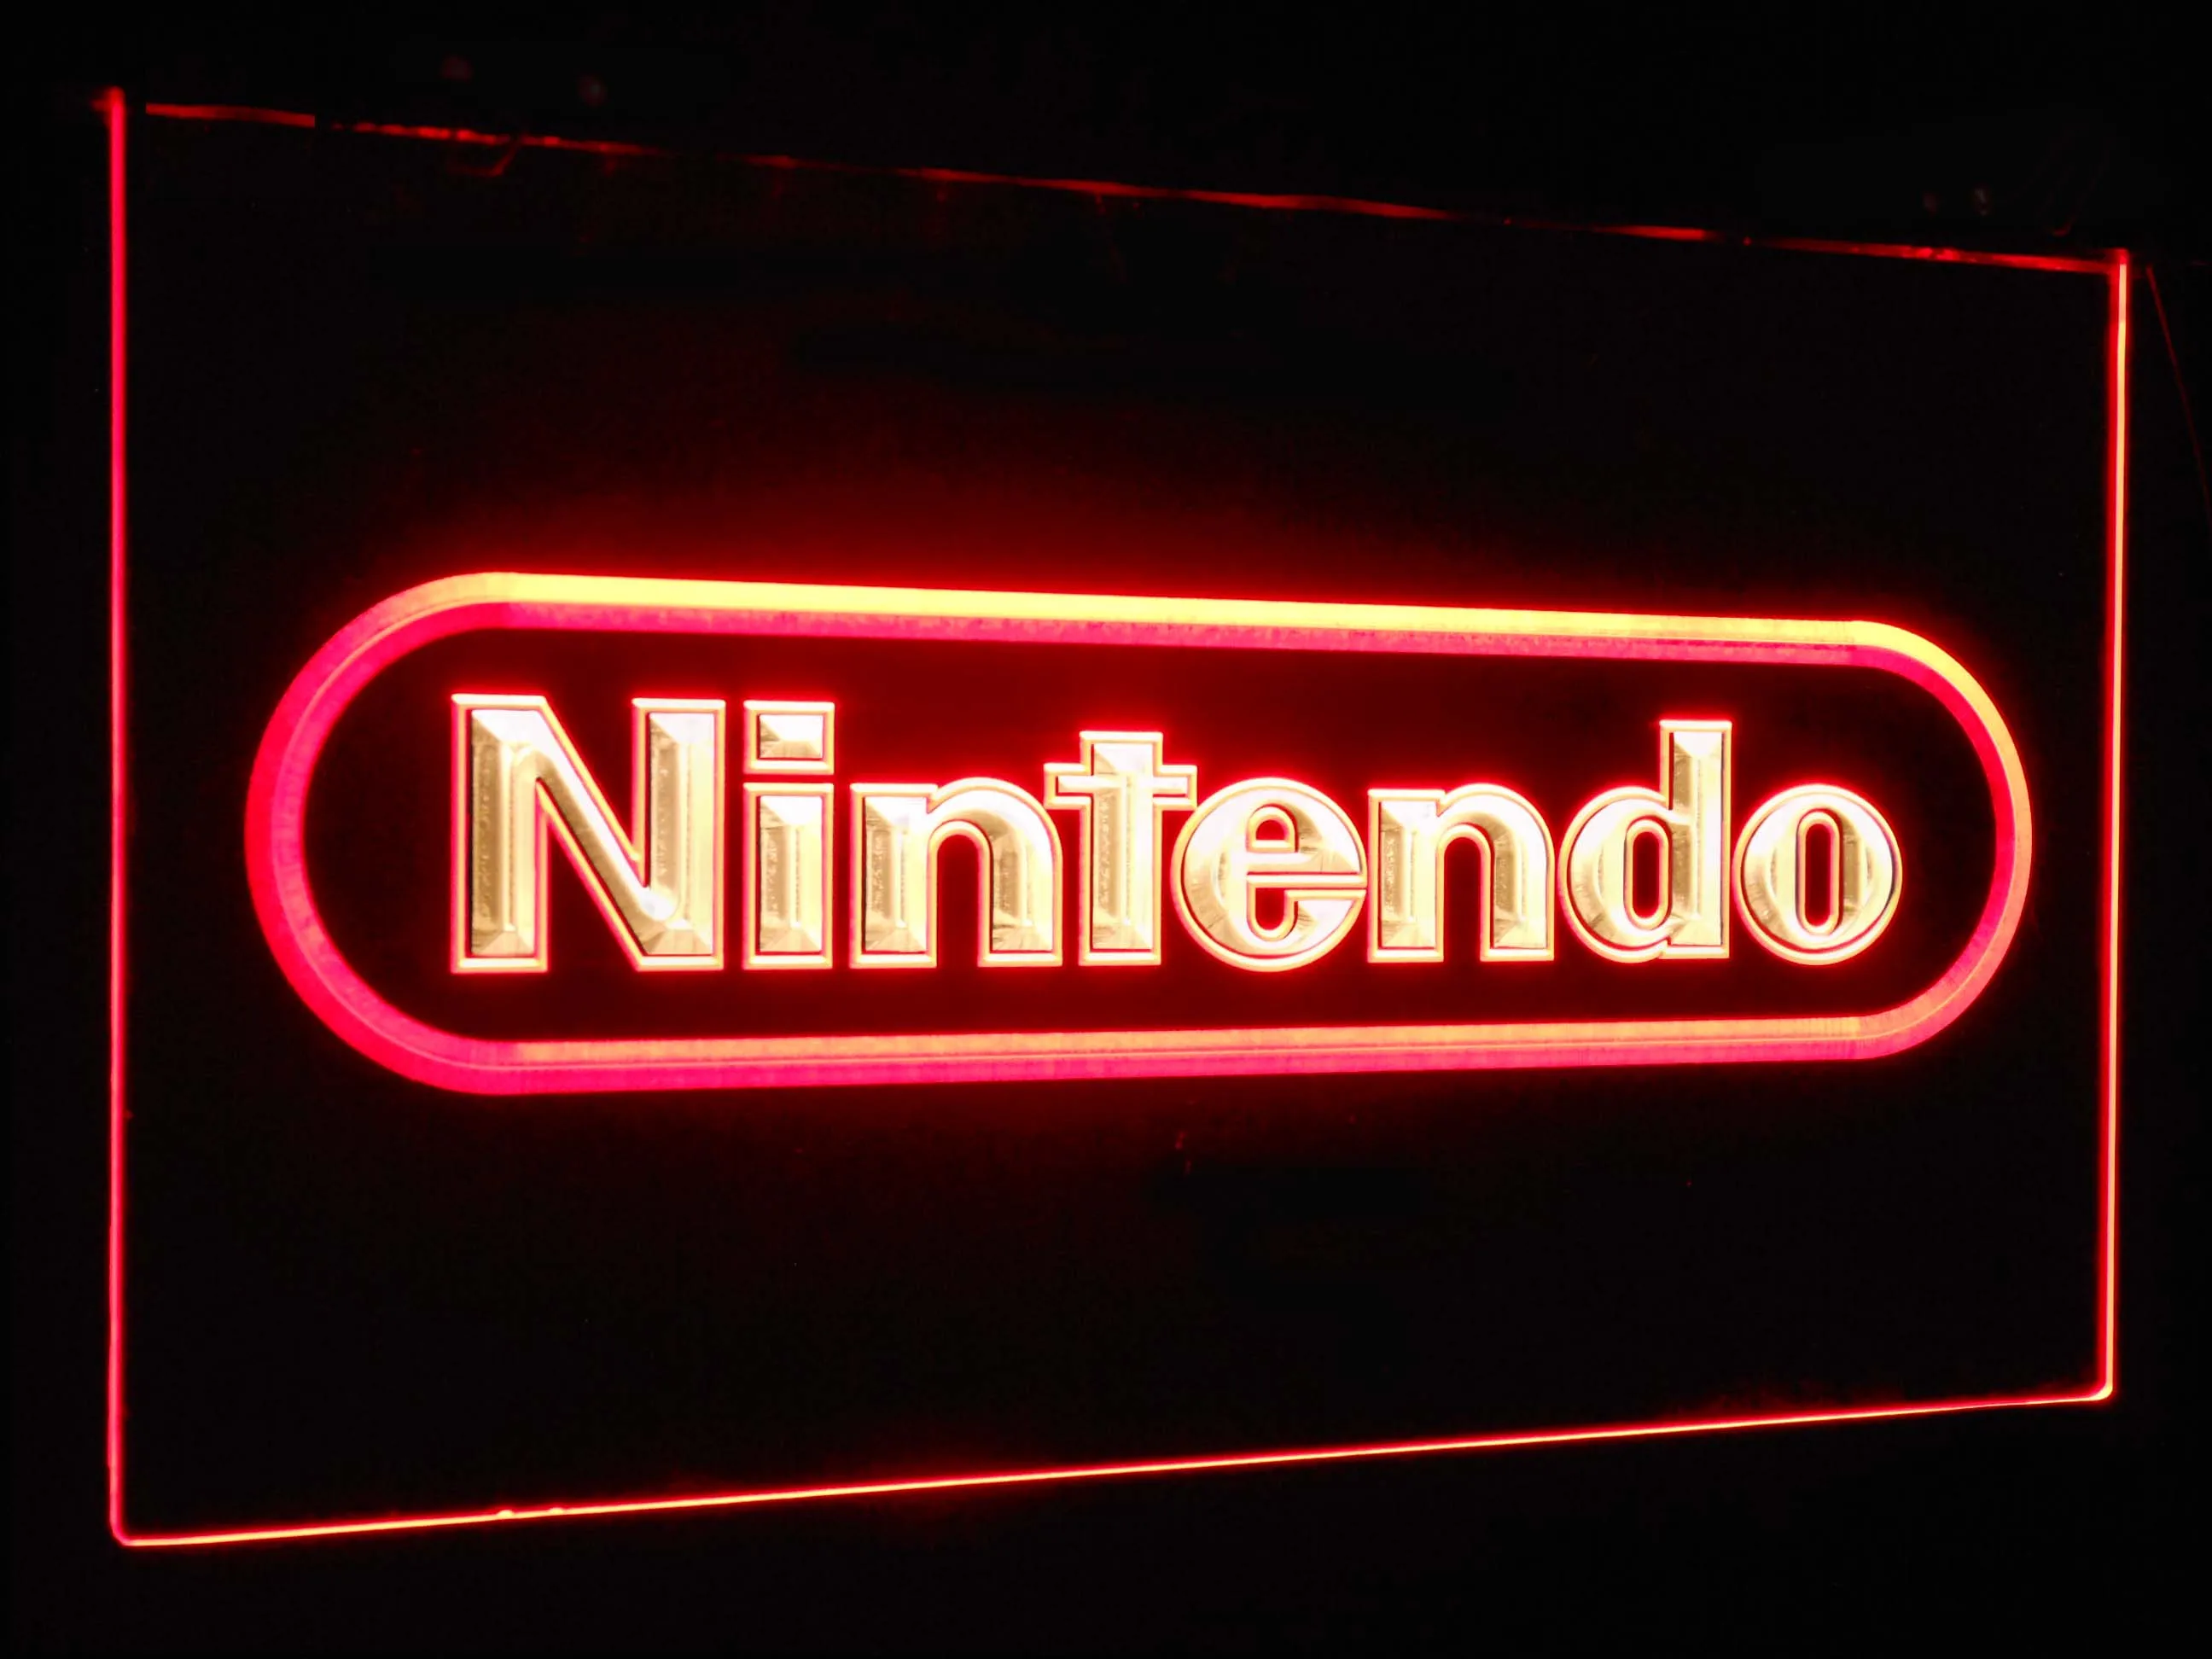 Nintendo видео игровая комната бар украшения подарок двойной цвет светодиодный неоновый светильник вывески st6-e0021 - Цвет: Red and Yellow